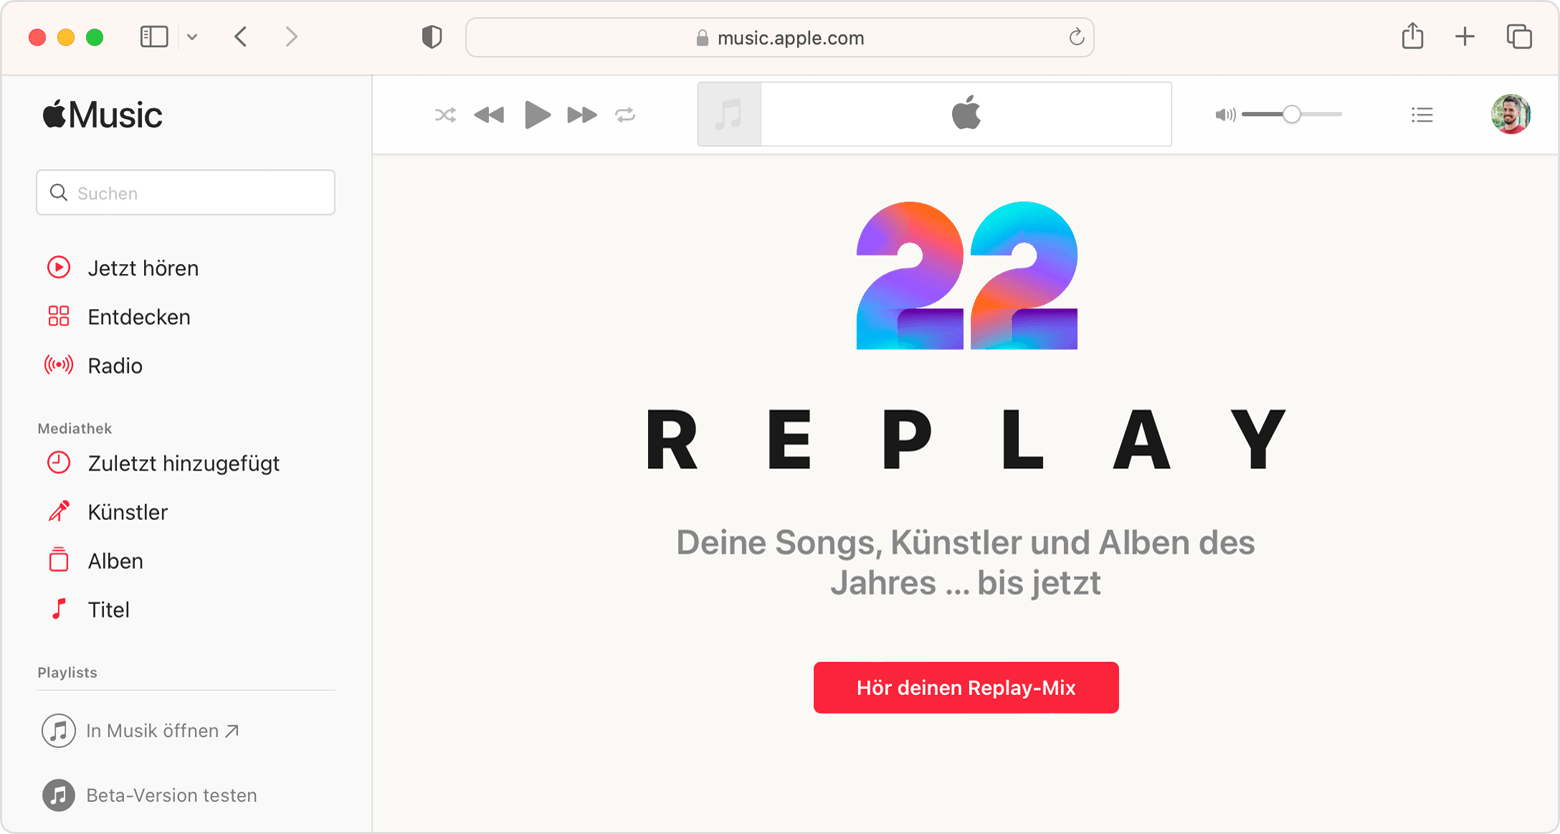 Safari-Fenster mit der Taste "Hör deinen Replay-Mix" auf replay.apple.com